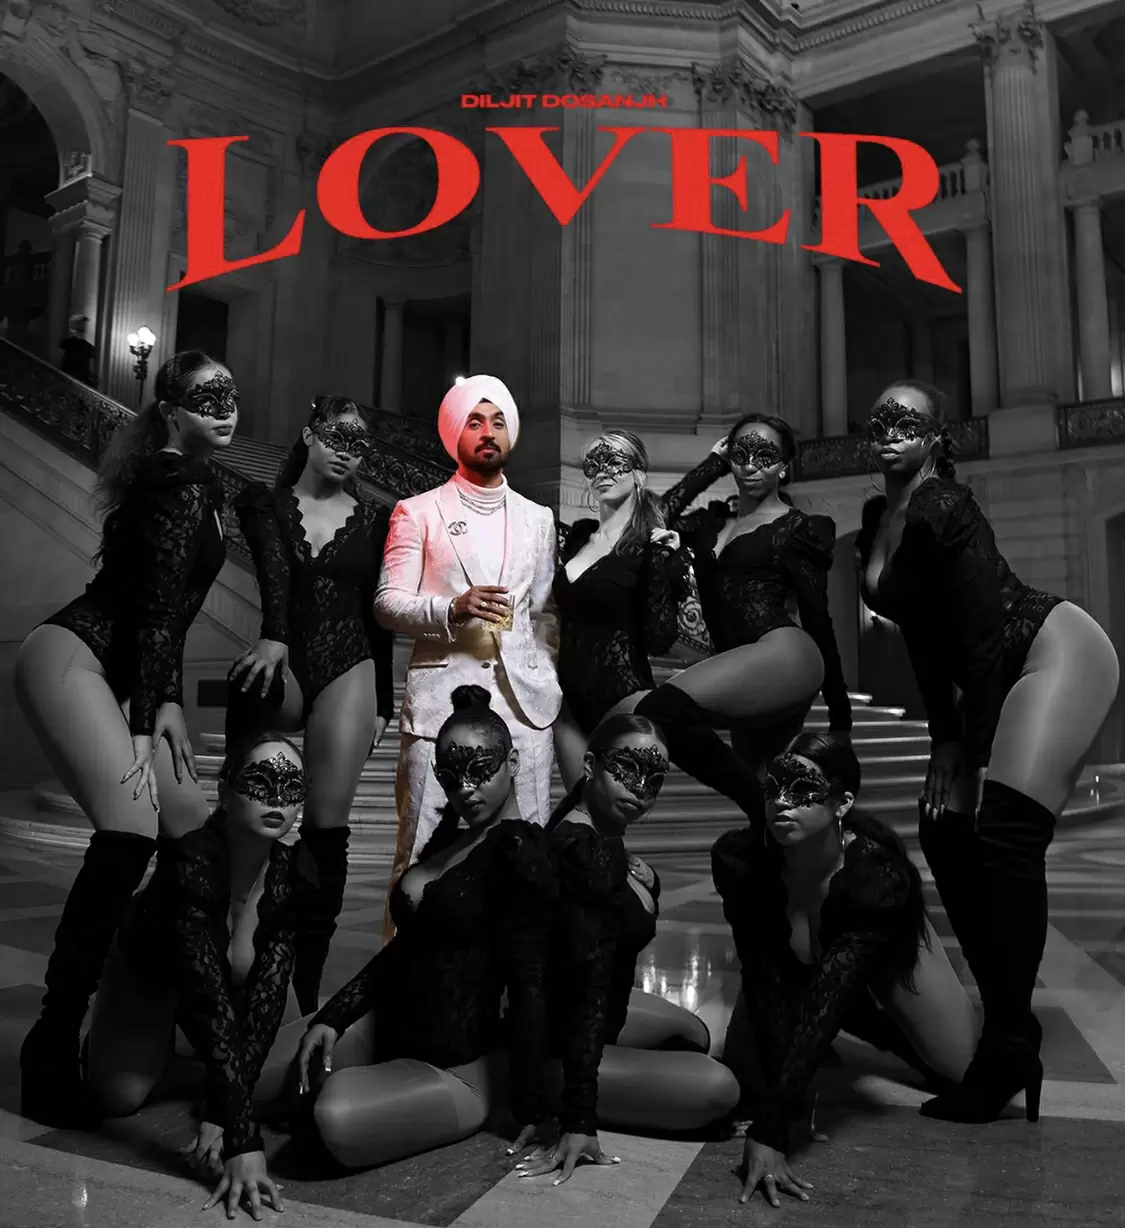 Lover Diljit Dosanjh Mp3 Download Song - Mr-Punjab